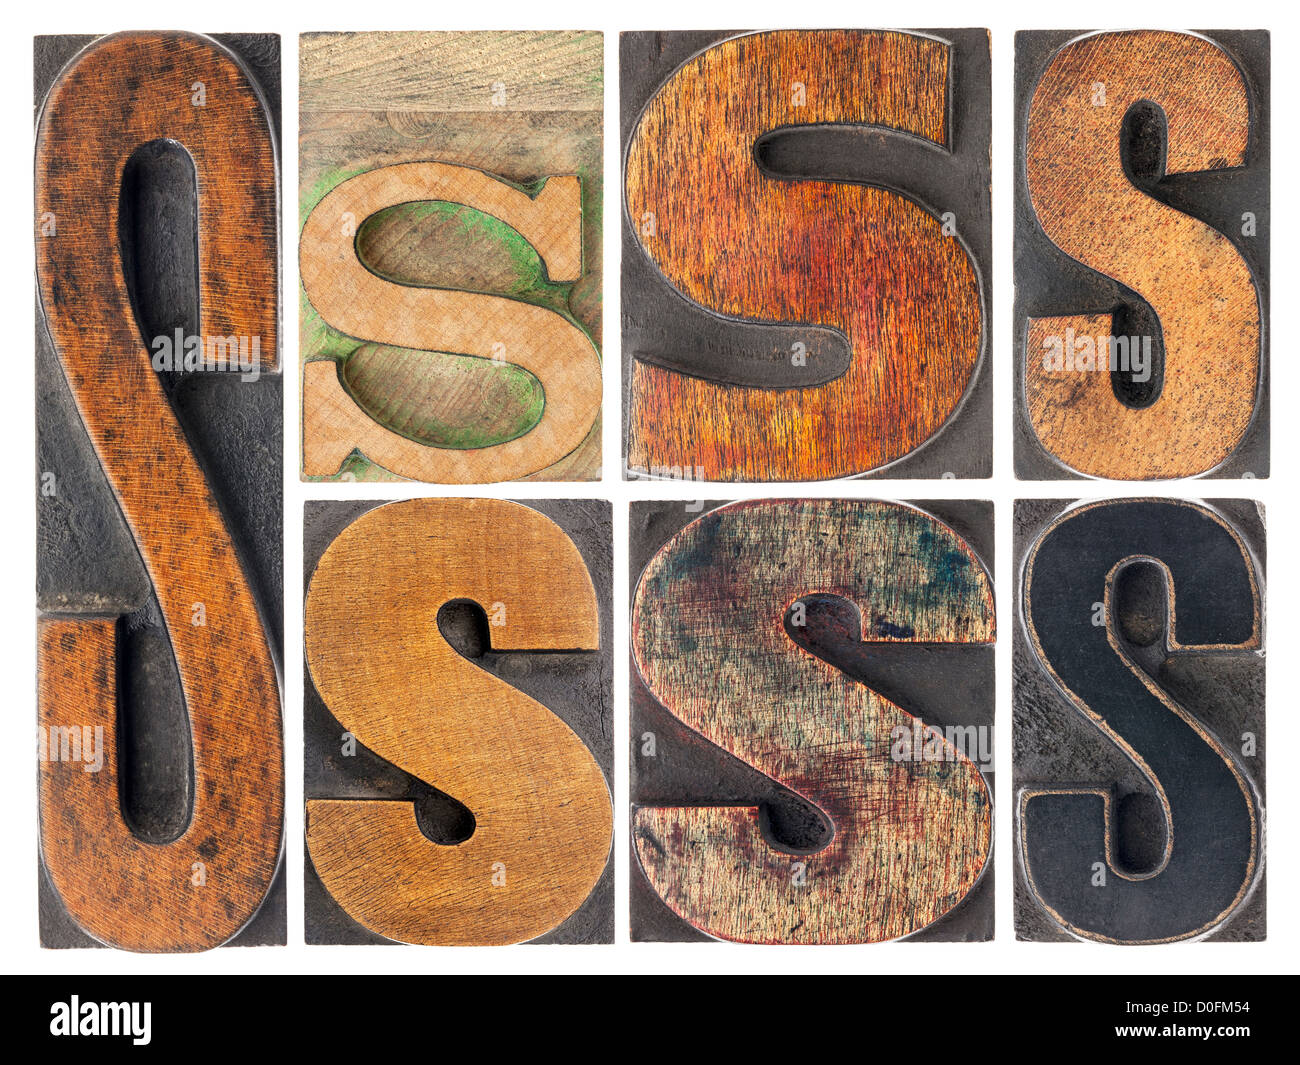 Lettre S - 7 typographie vintage isolés de type bois avec patine d'encre, variété de polices Banque D'Images